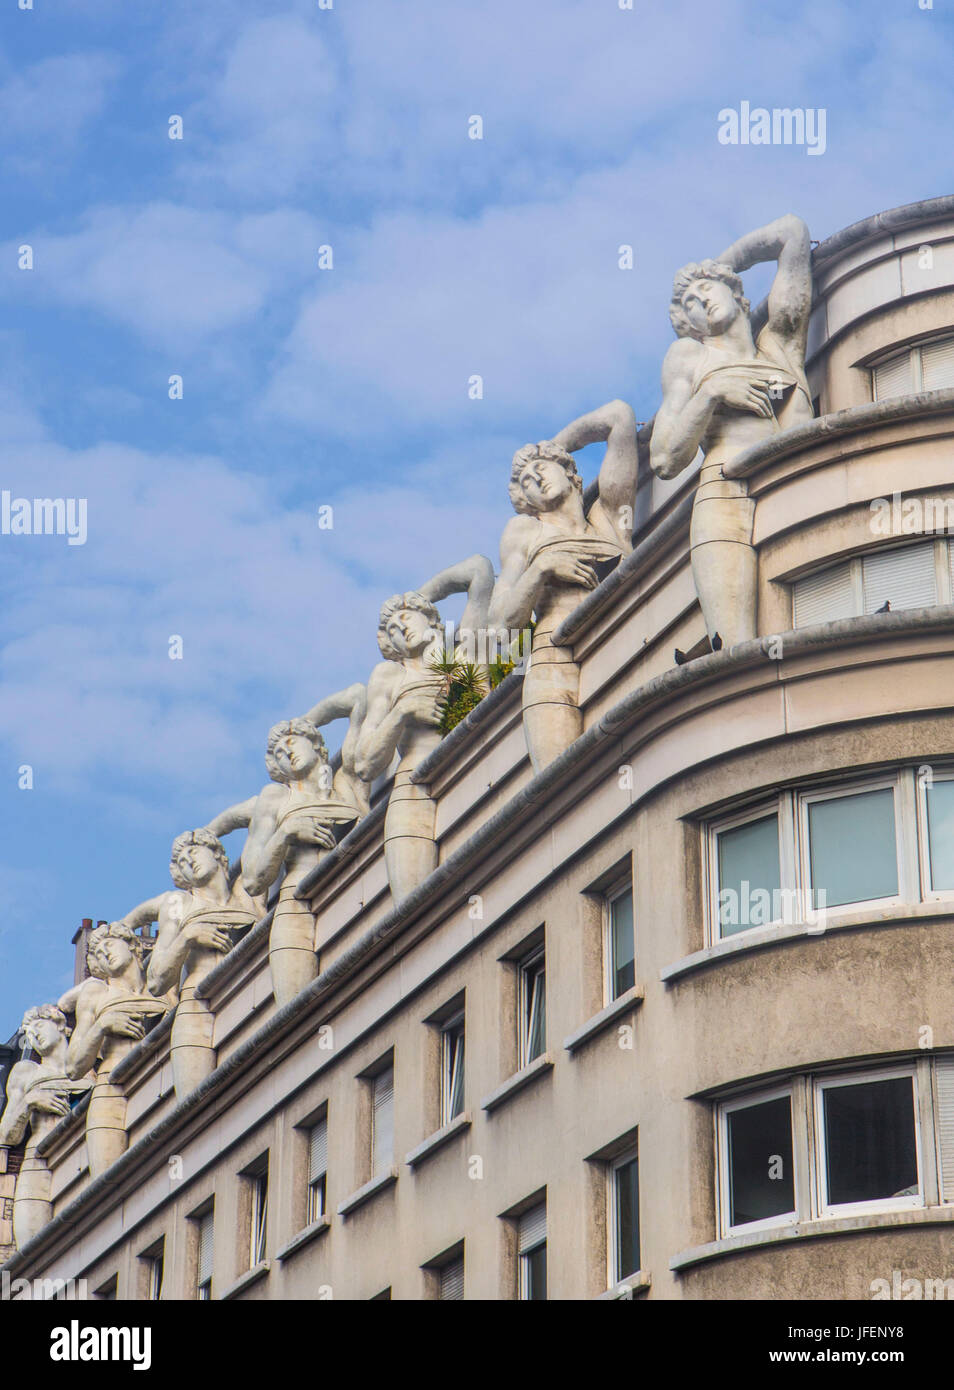 France, Paris City, modernism architecture Stock Photo